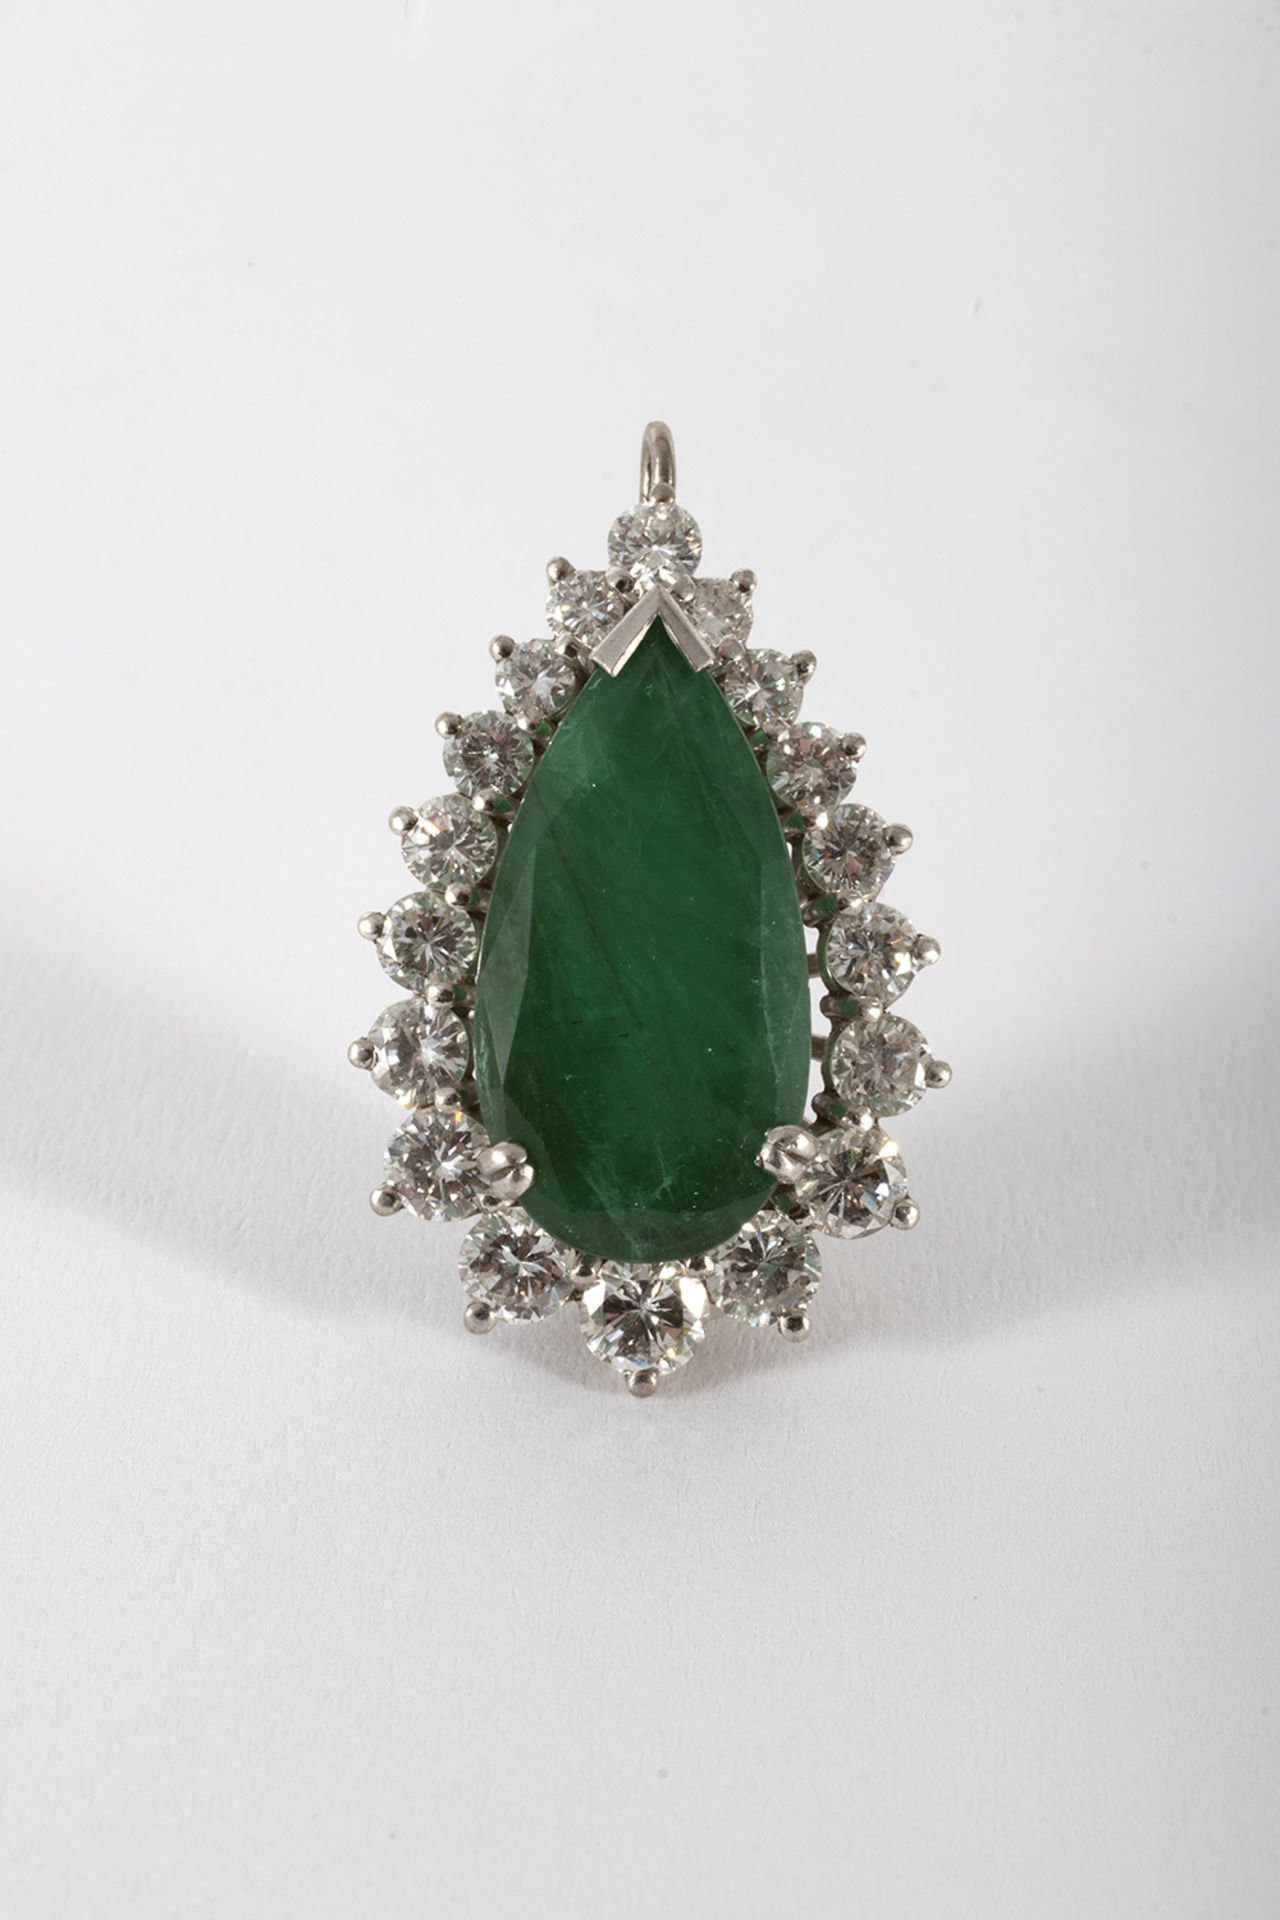 White gold pendant with a knob-cut emerald and a brilliant-cut diamond border.